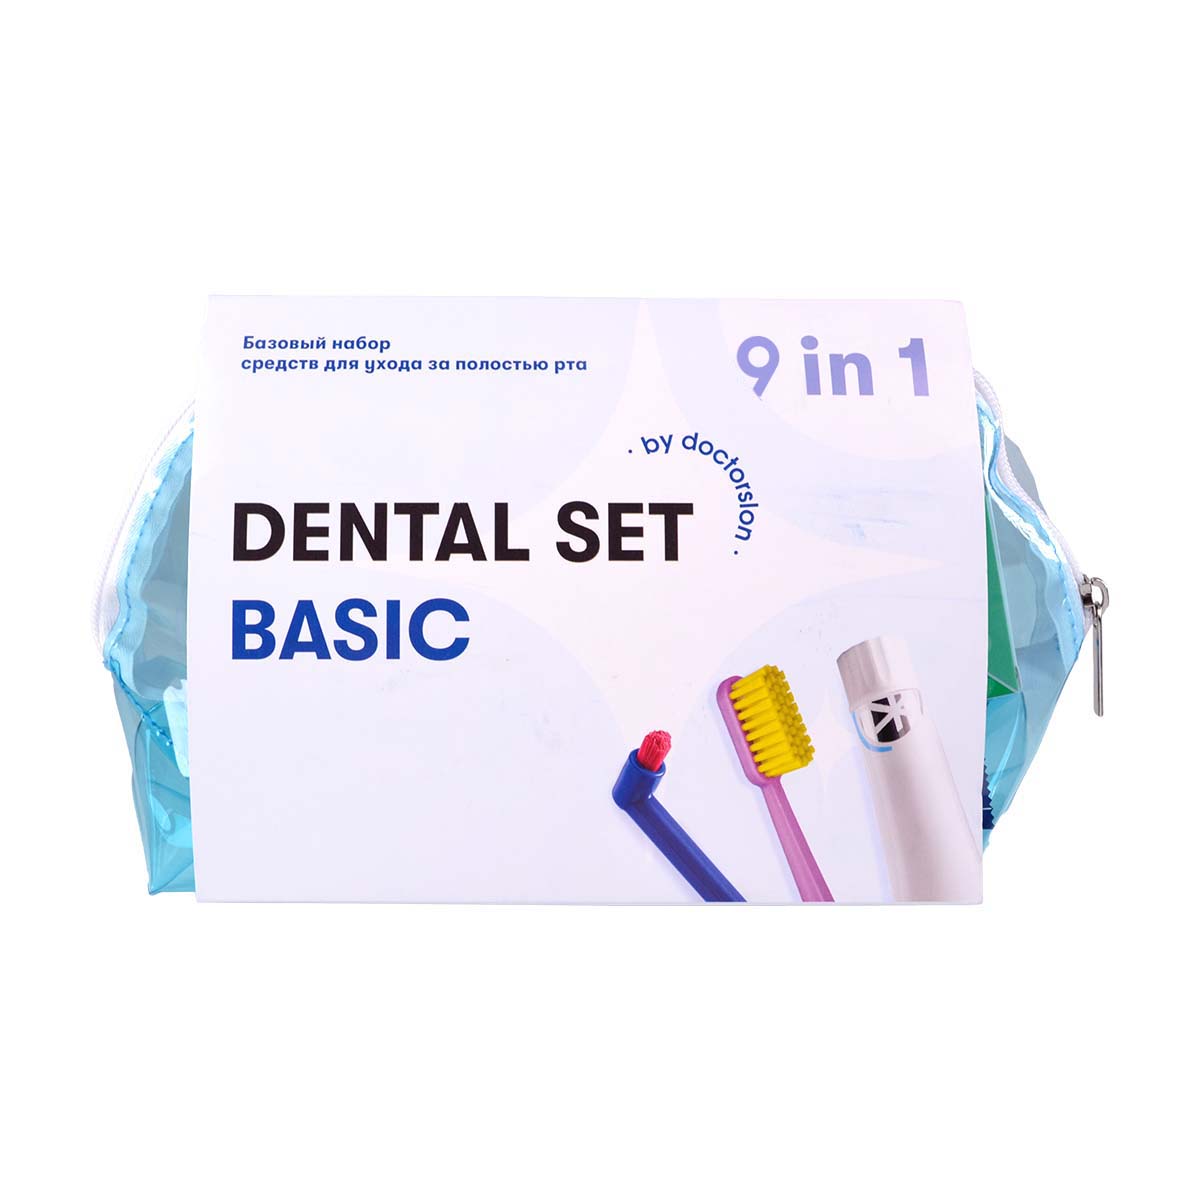 Готовый набор для гигиены Dental Box Dental Set basic готовый набор для гигиены dental box dental box укрепление эмали